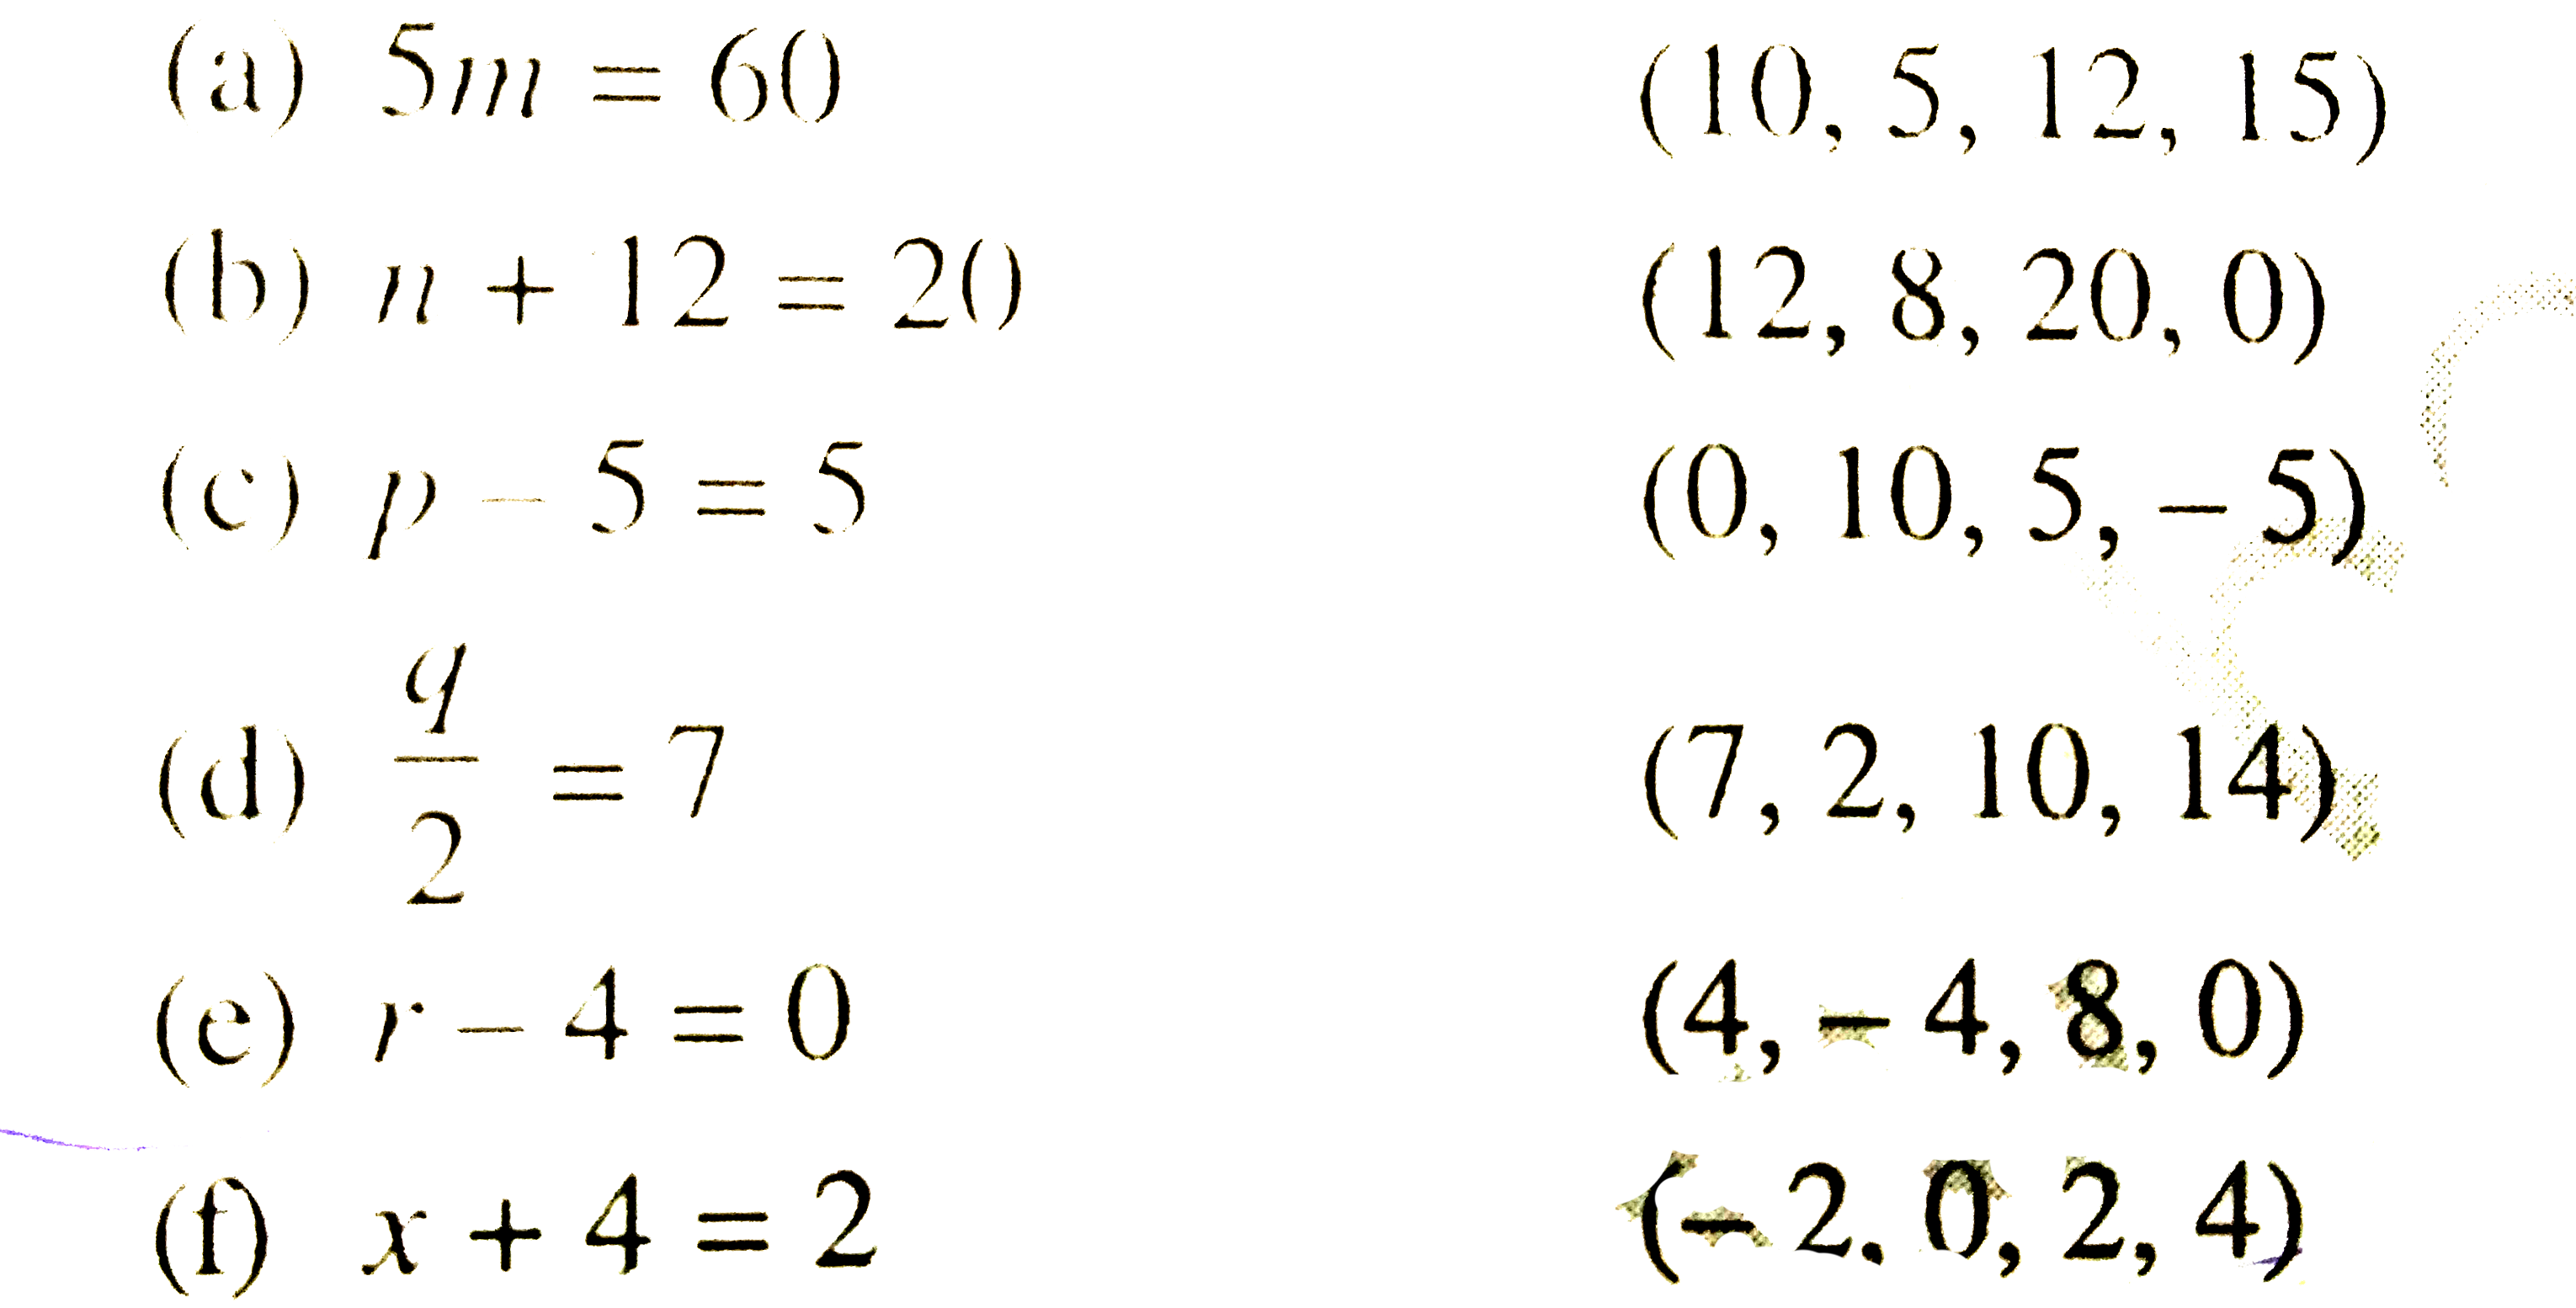 प्रत्येक समीकरण के सम्मुख कोष्ठकों में दिए मानों में से समीकरण का हल चुनिए। दर्शाइए की अन्य मान समीकरण को संतुष्ट नहीं करते हैं।